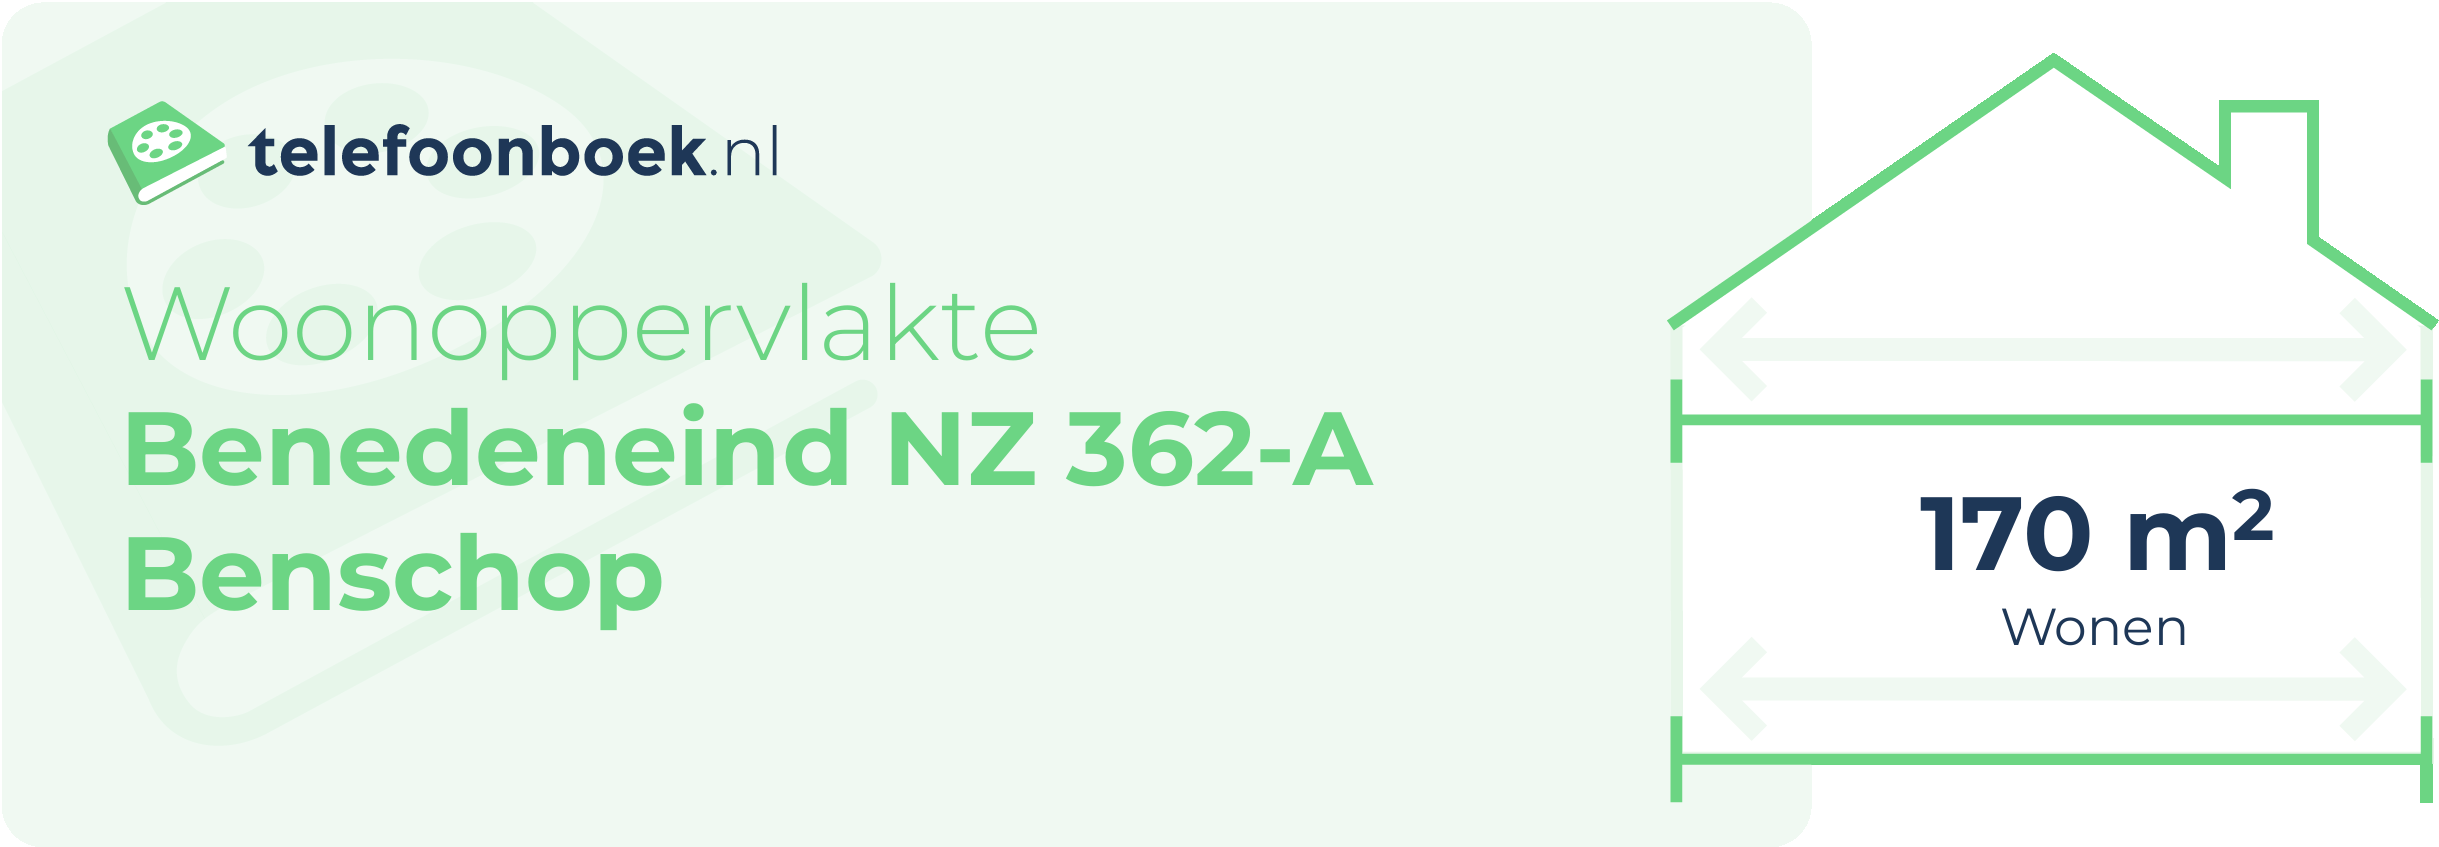 Woonoppervlakte Benedeneind NZ 362-A Benschop